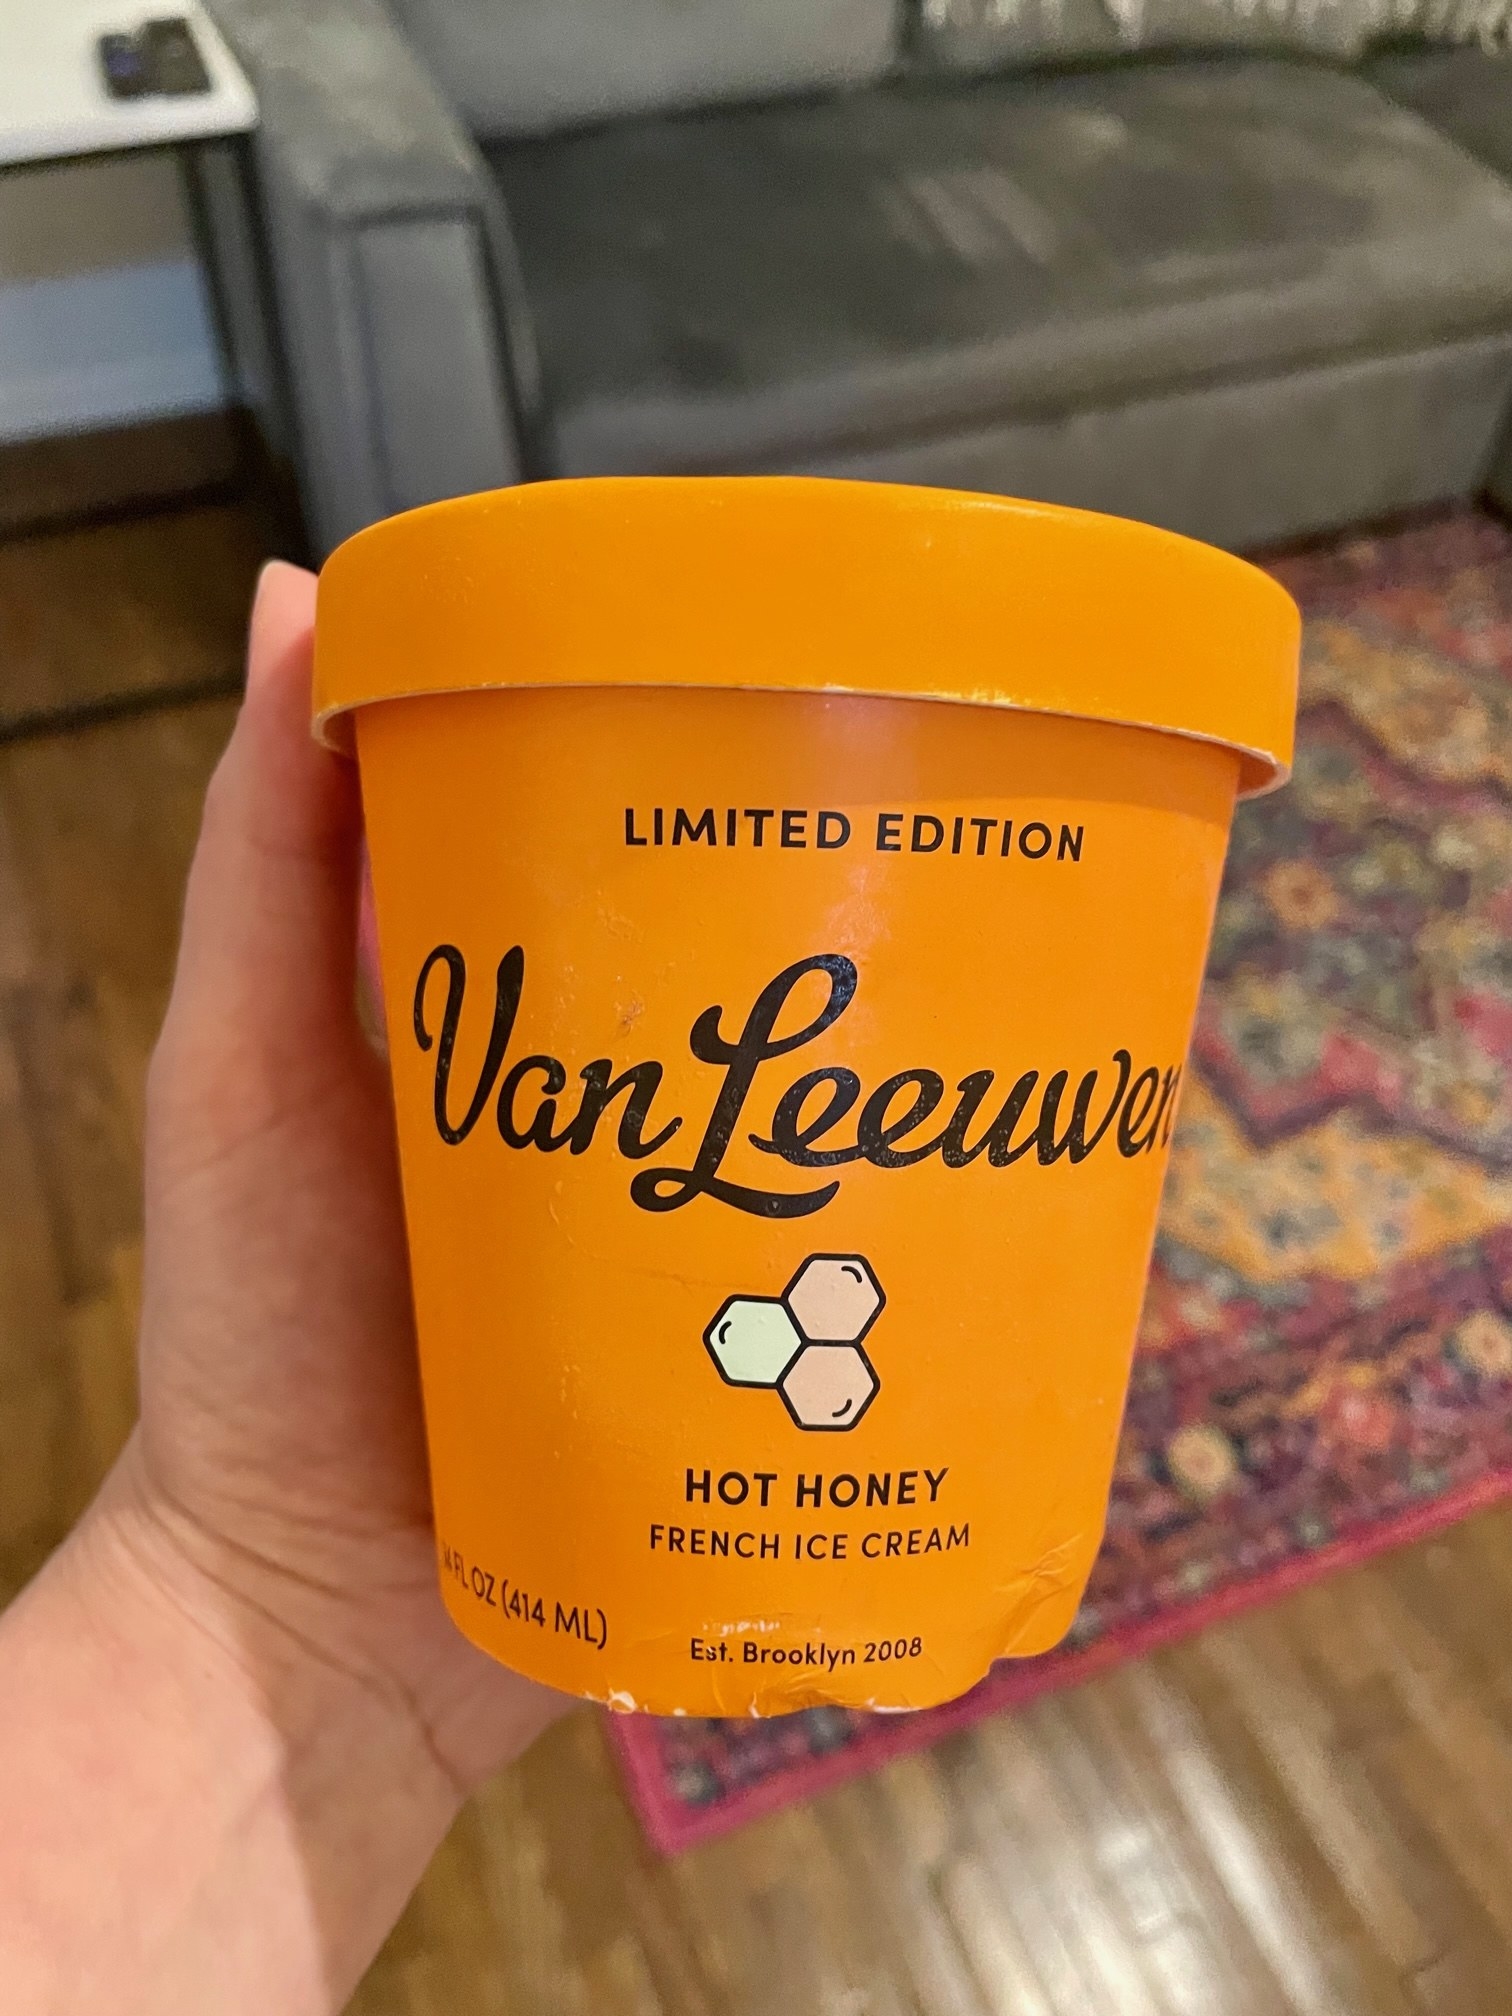 I Tried Van Leeuwen's Weirdest Ice Cream Flavors